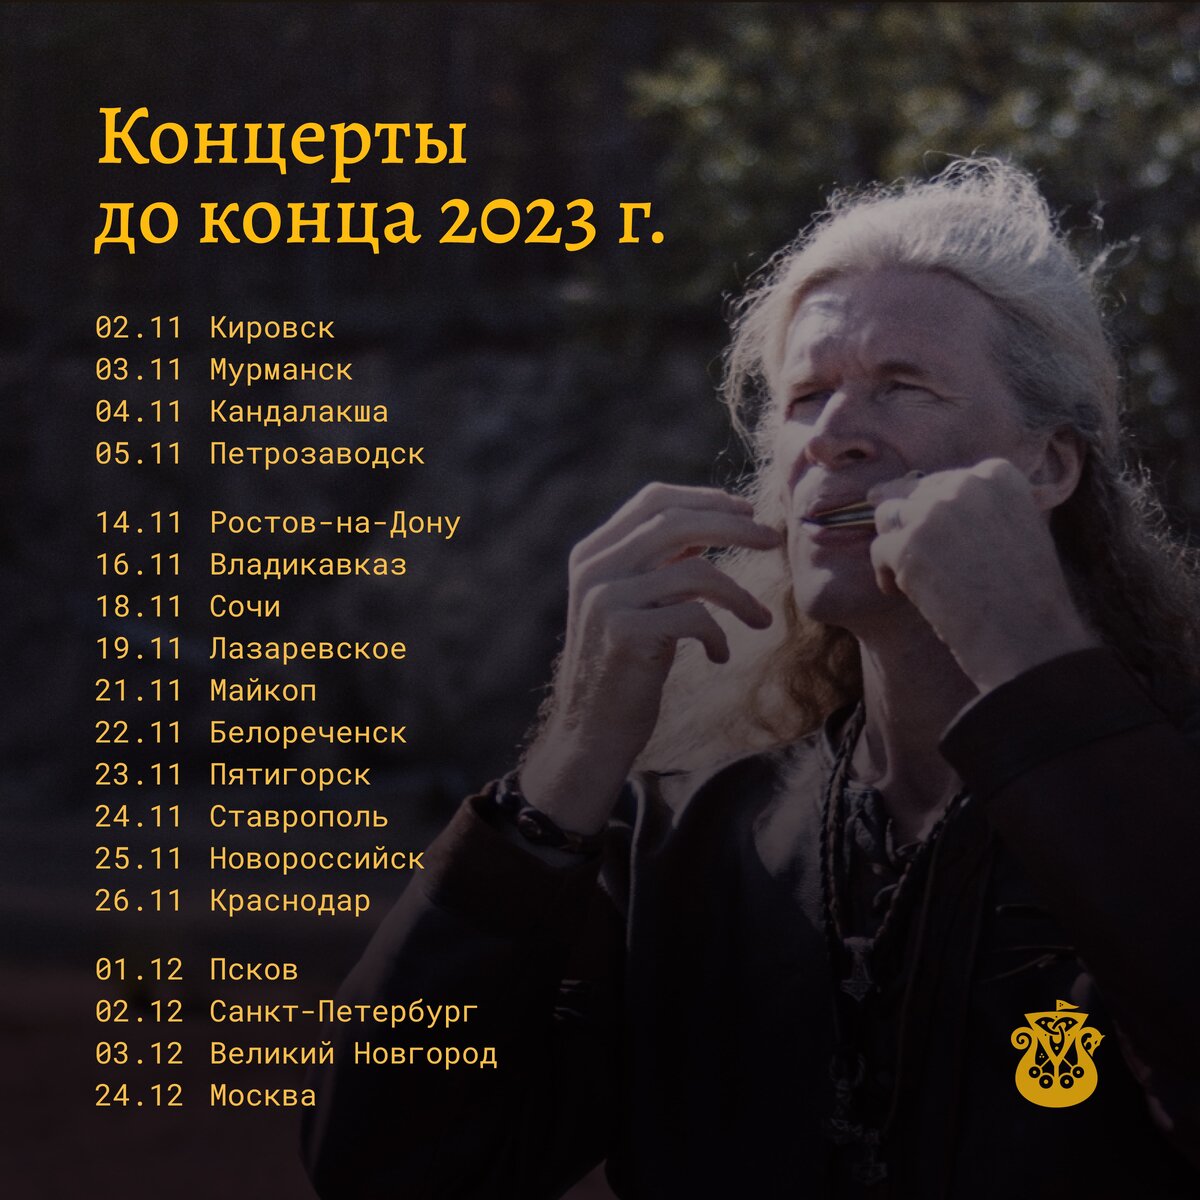 Дорогие друзья, мы обновили расписание до конца года. Рады, что удалось добавить концерты в Сочи, Белореченске, Лазаревском и Майкопе.